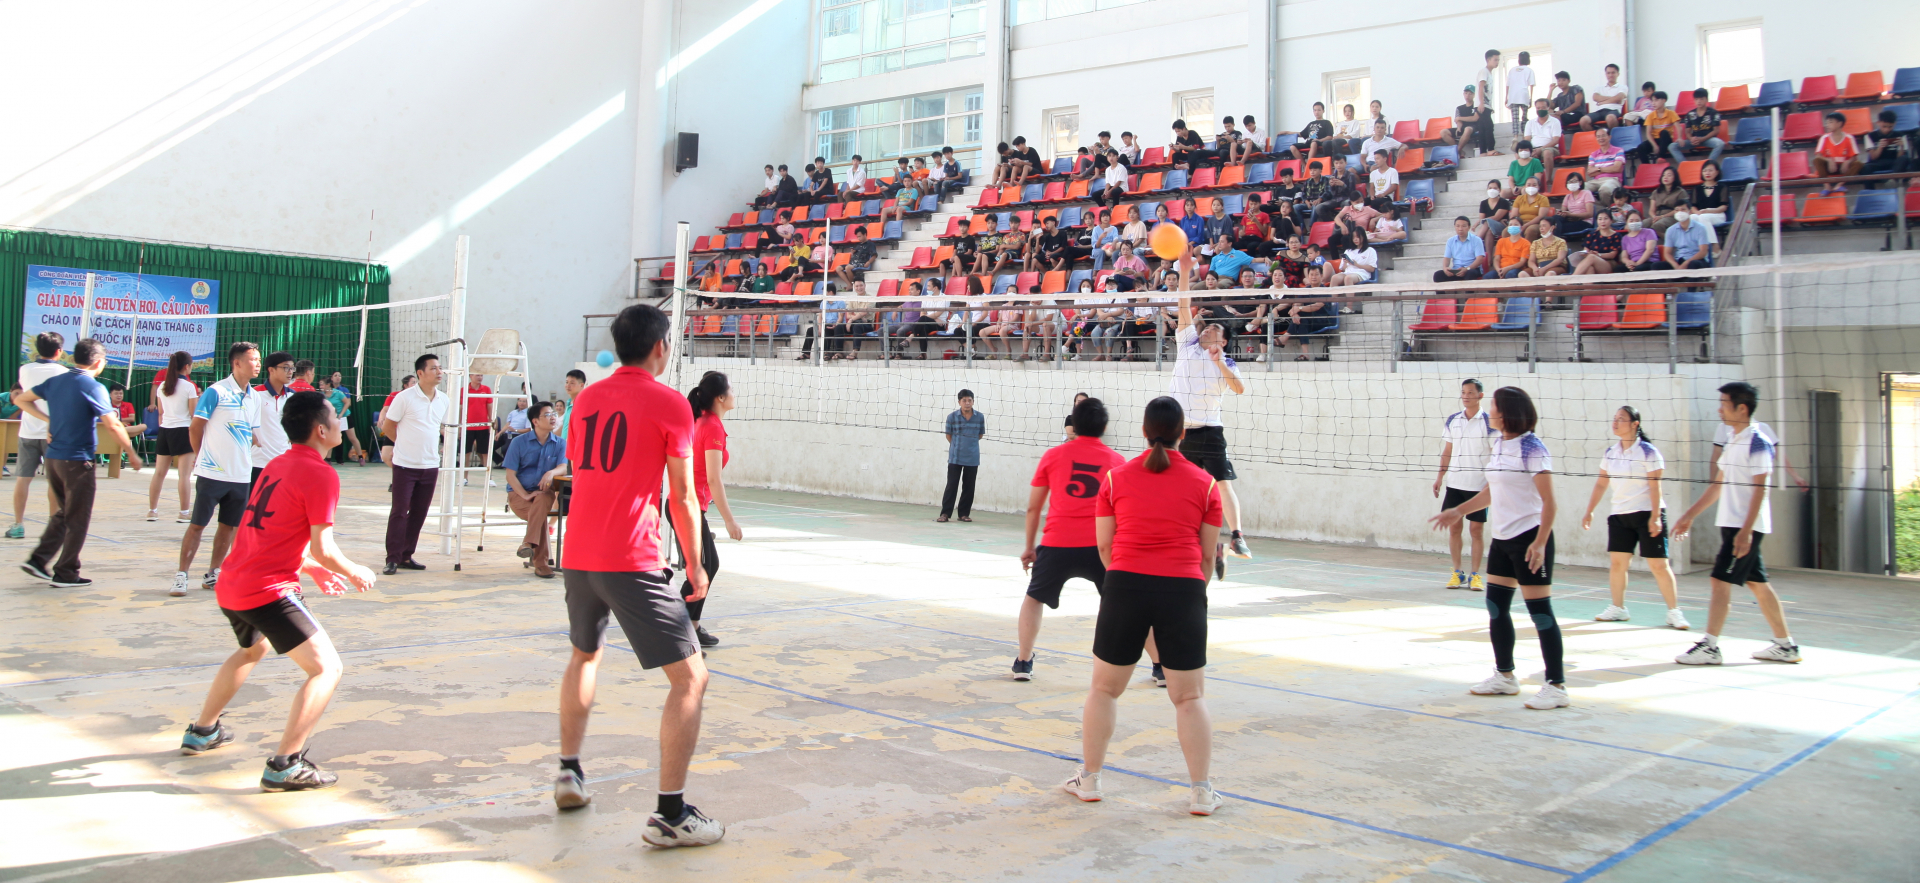 Trận đấu bóng giữa đội Ban Nội chính Tỉnh ủy với Trường Chính trị tỉnh.
